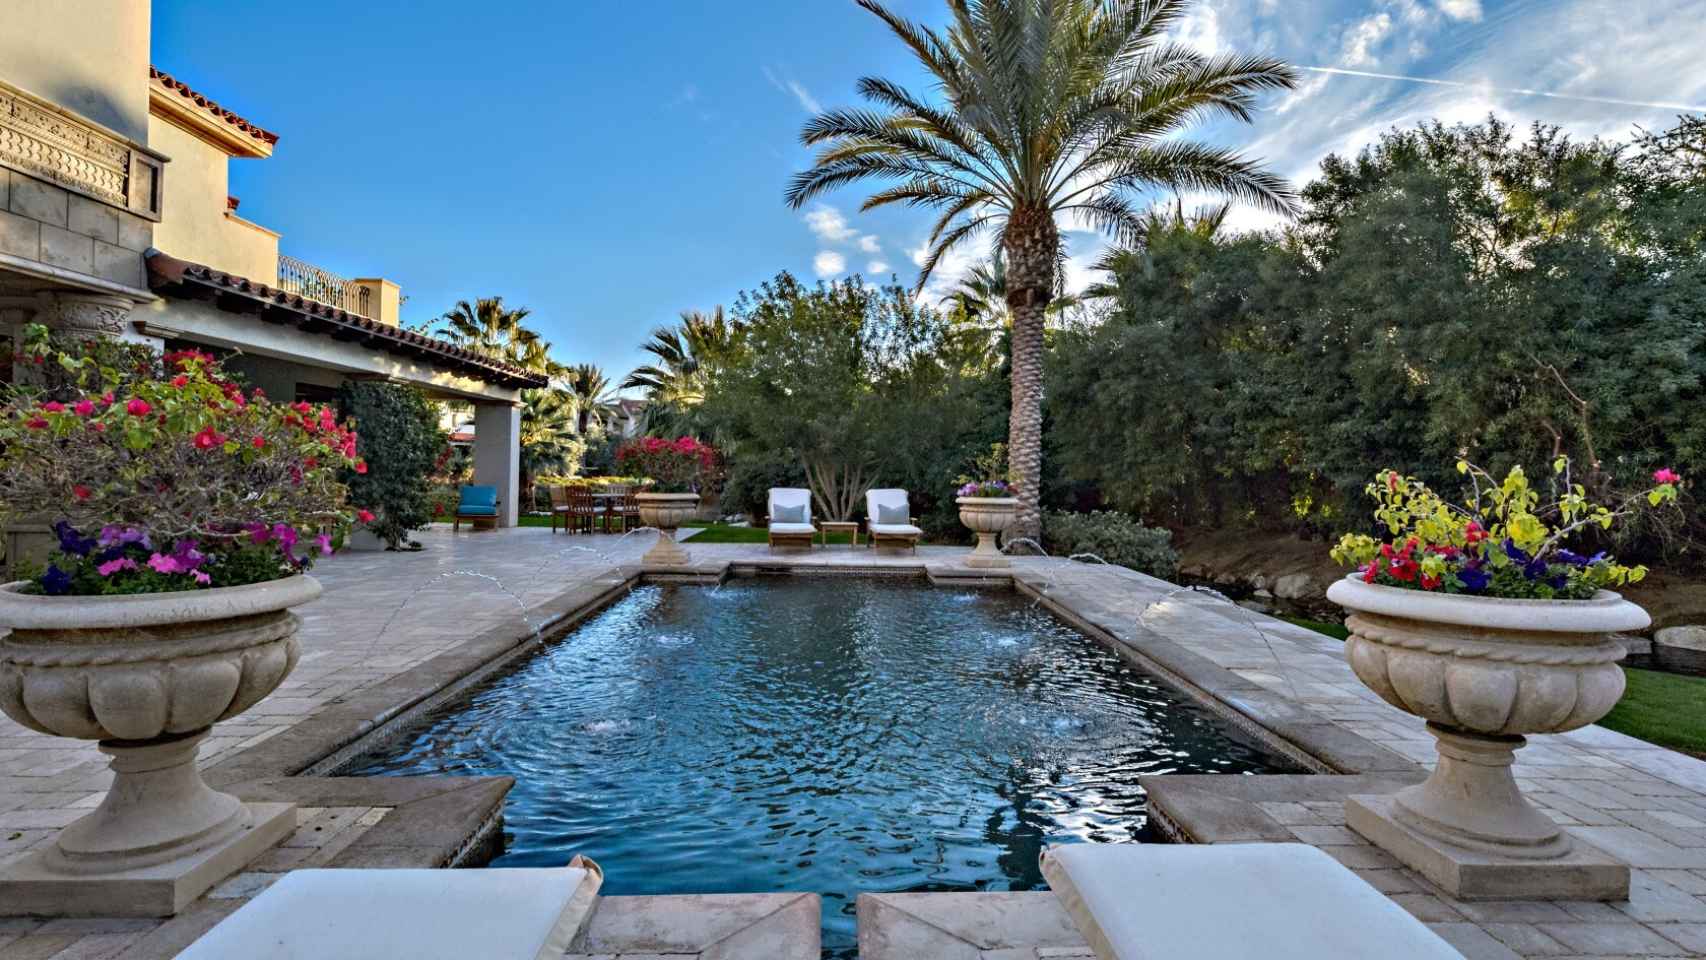 La casa que vende Sylvester Stallone es una villa de estilo mediterráneo y toscano.